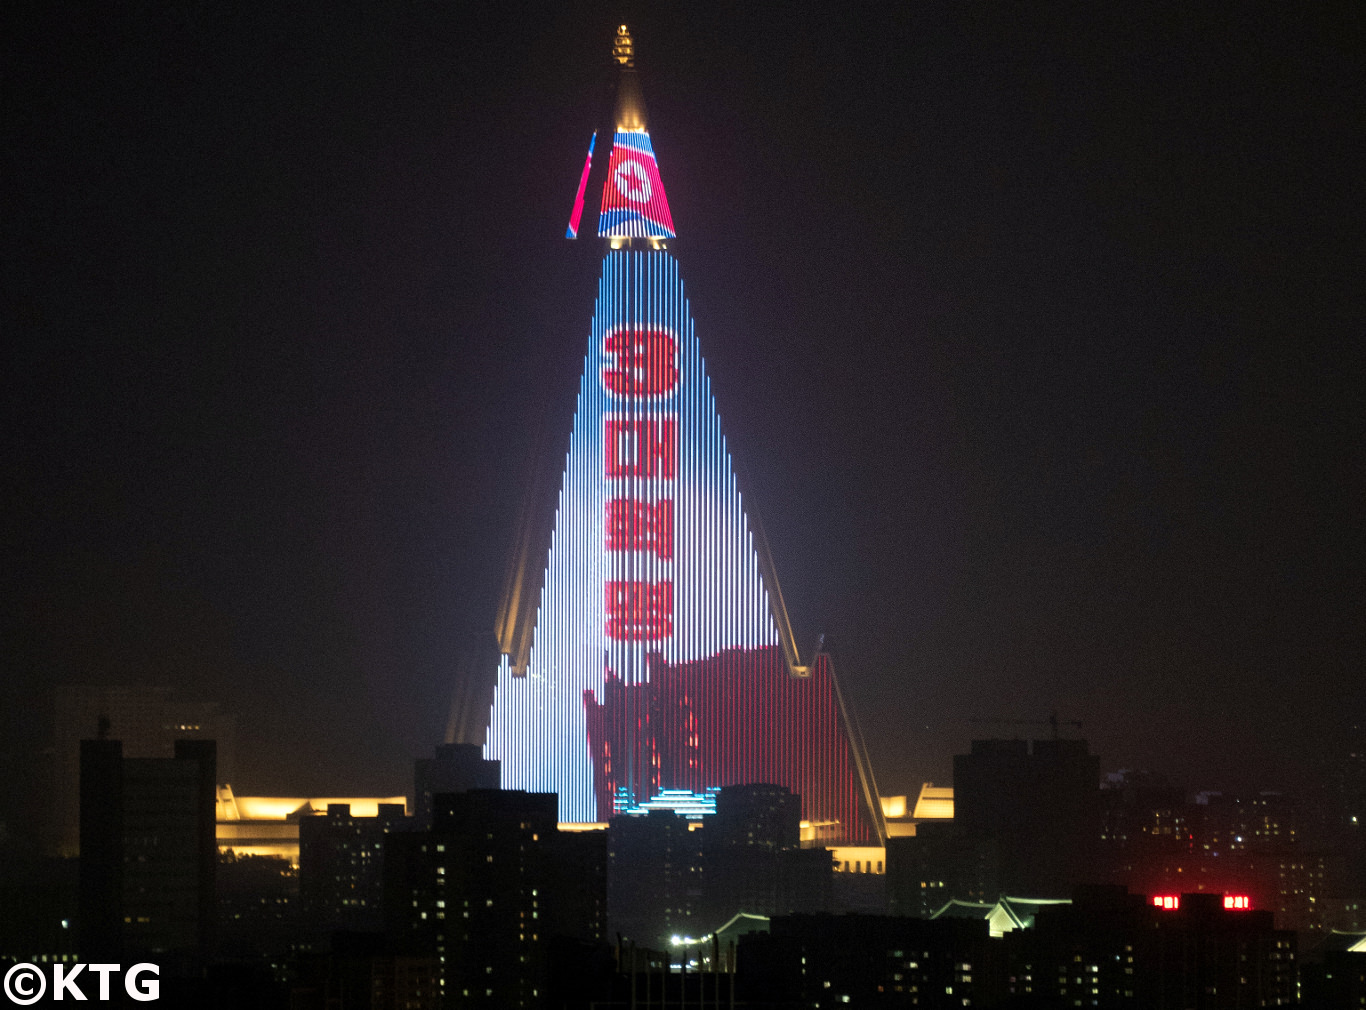 L'hôtel Ryugyong à Pyongyang, Corée du Nord (RPDC), vu de nuit. Voyage organisé par KTG Tours